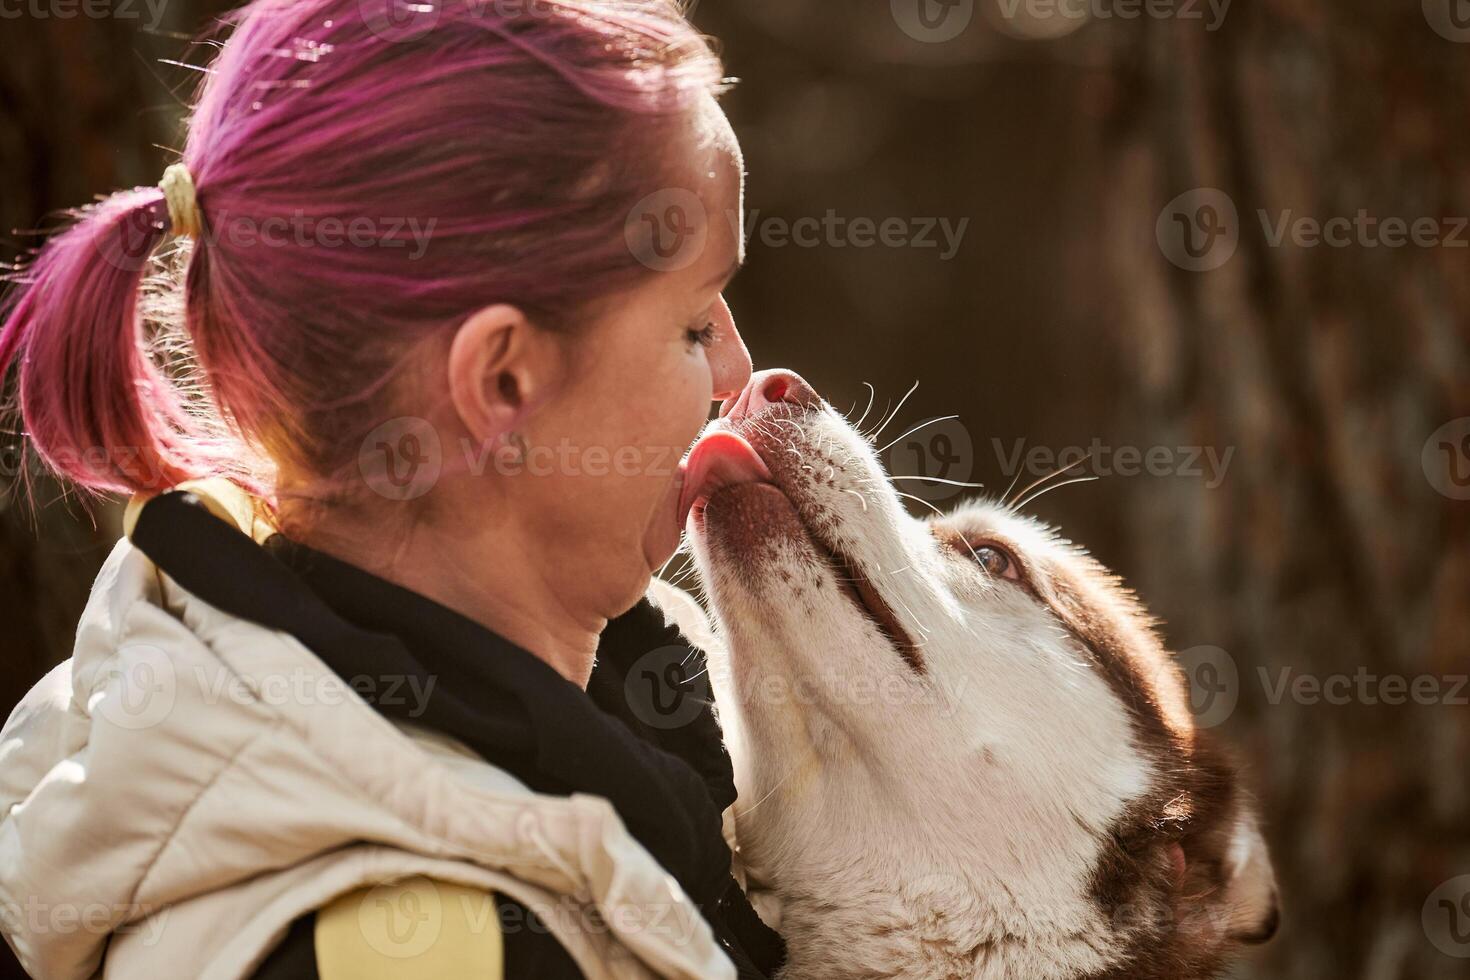 sibirischer husky-hund, der frau mit rosa haaren küsst, wahre liebe von mensch und haustier, lustiges treffen foto